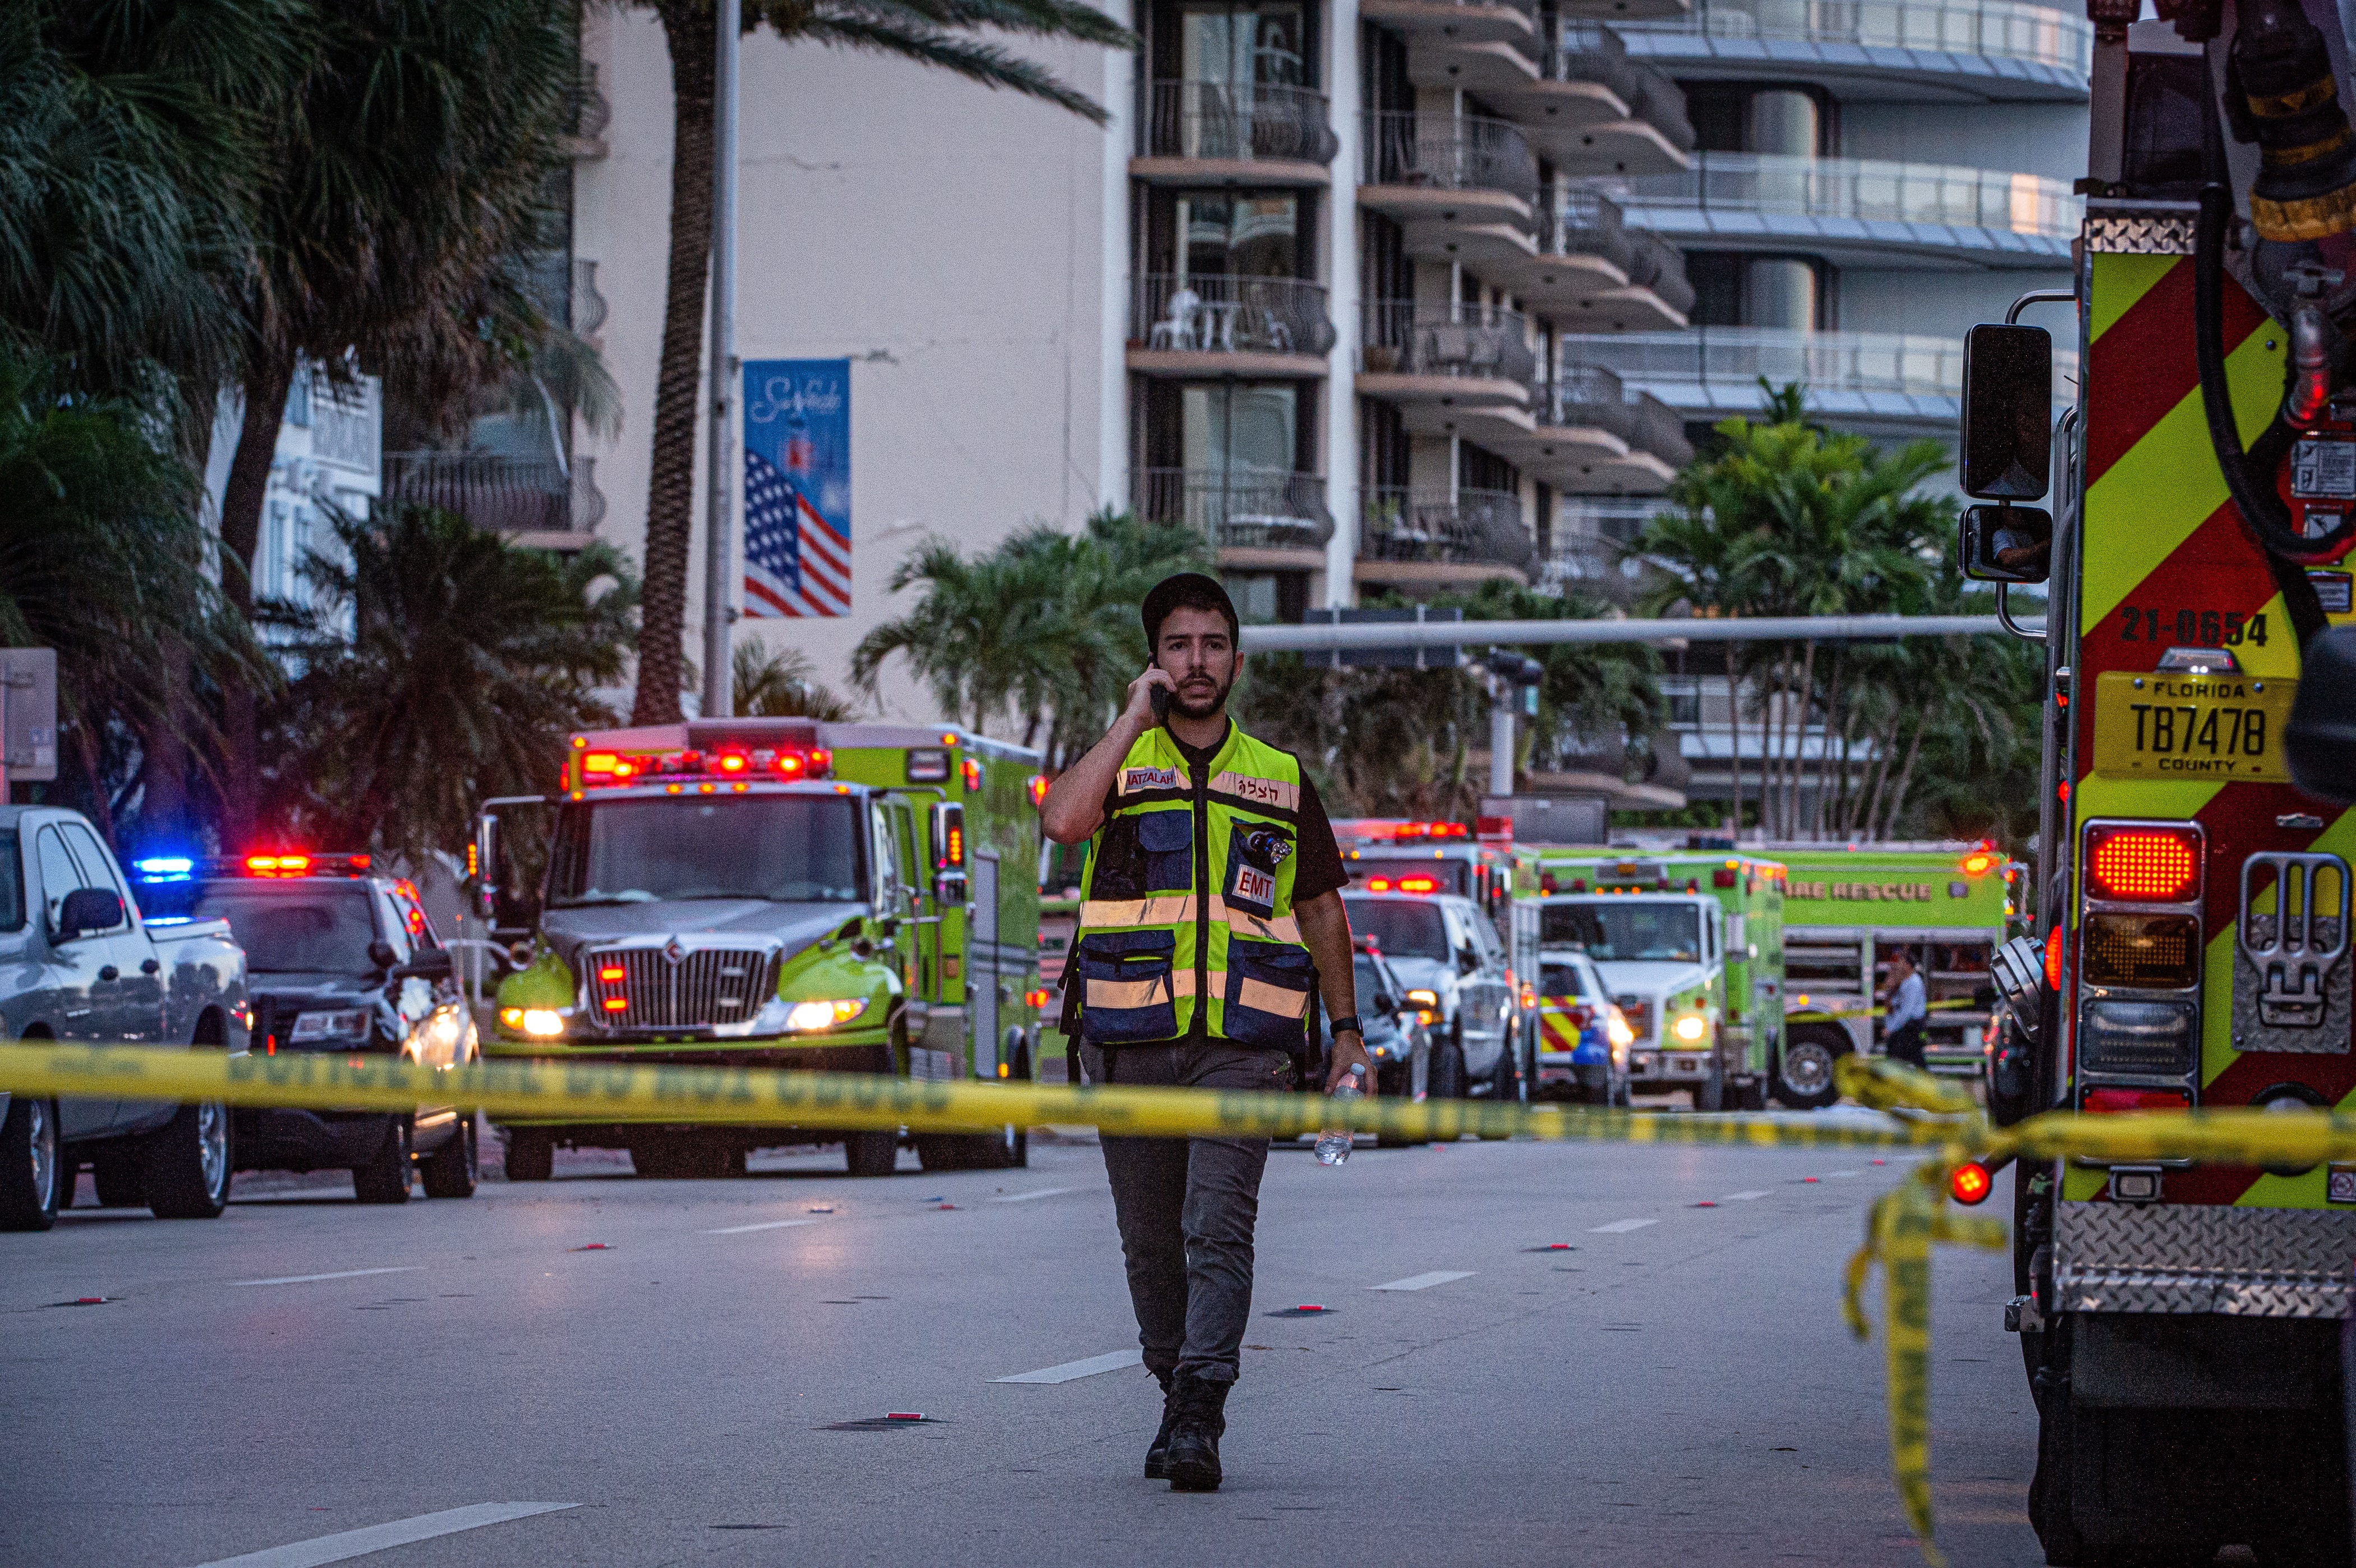 El derrumbe parcial de un edificio residencial en Florida ha dejado por lo menos a 99 desaparecidos. (Foto Prensa Libre: Hemeroteca PL)